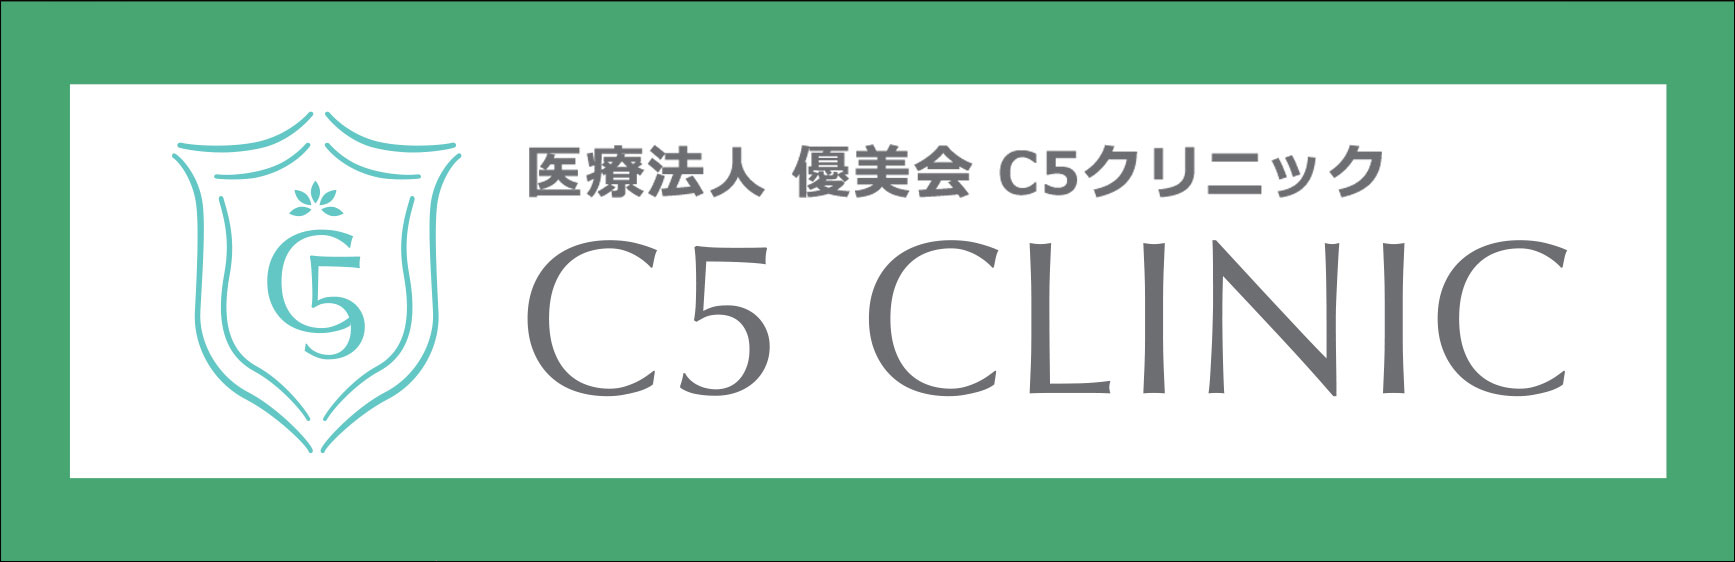 医療法人 優美会 C5クリニック C5 CLINIC